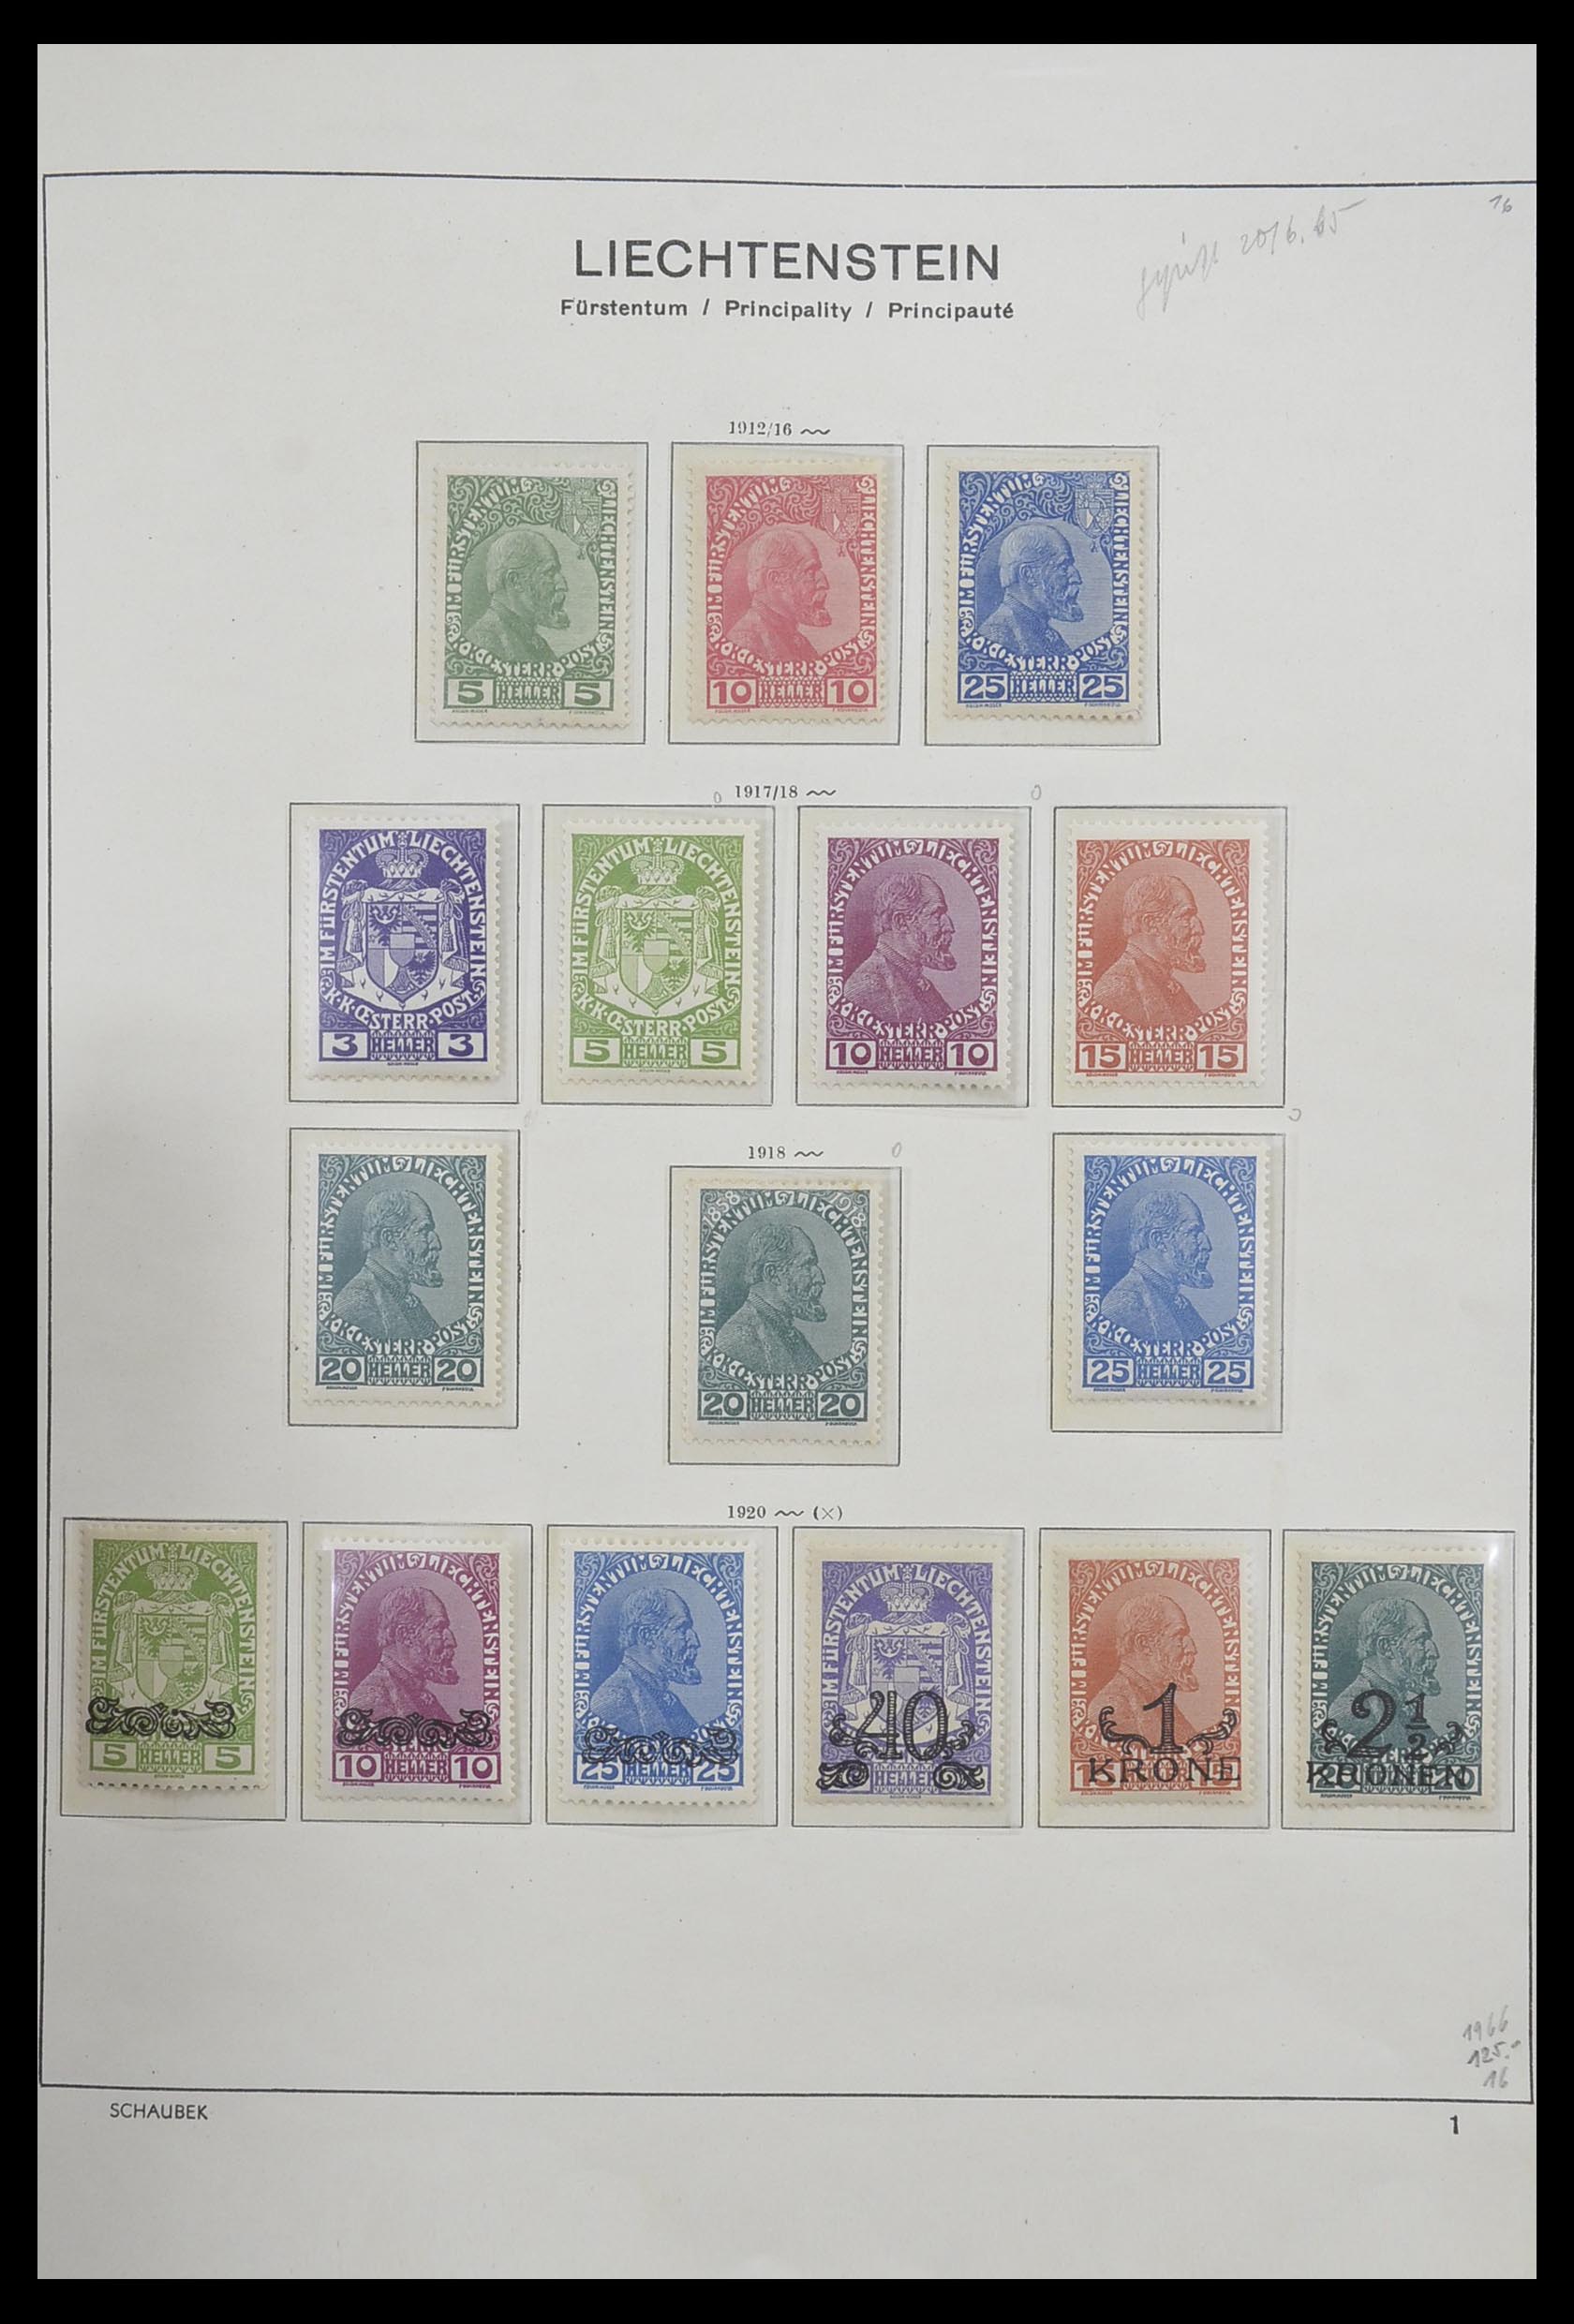 33274 001 - Stamp collection 33274 Liechtenstein 1912-1996.